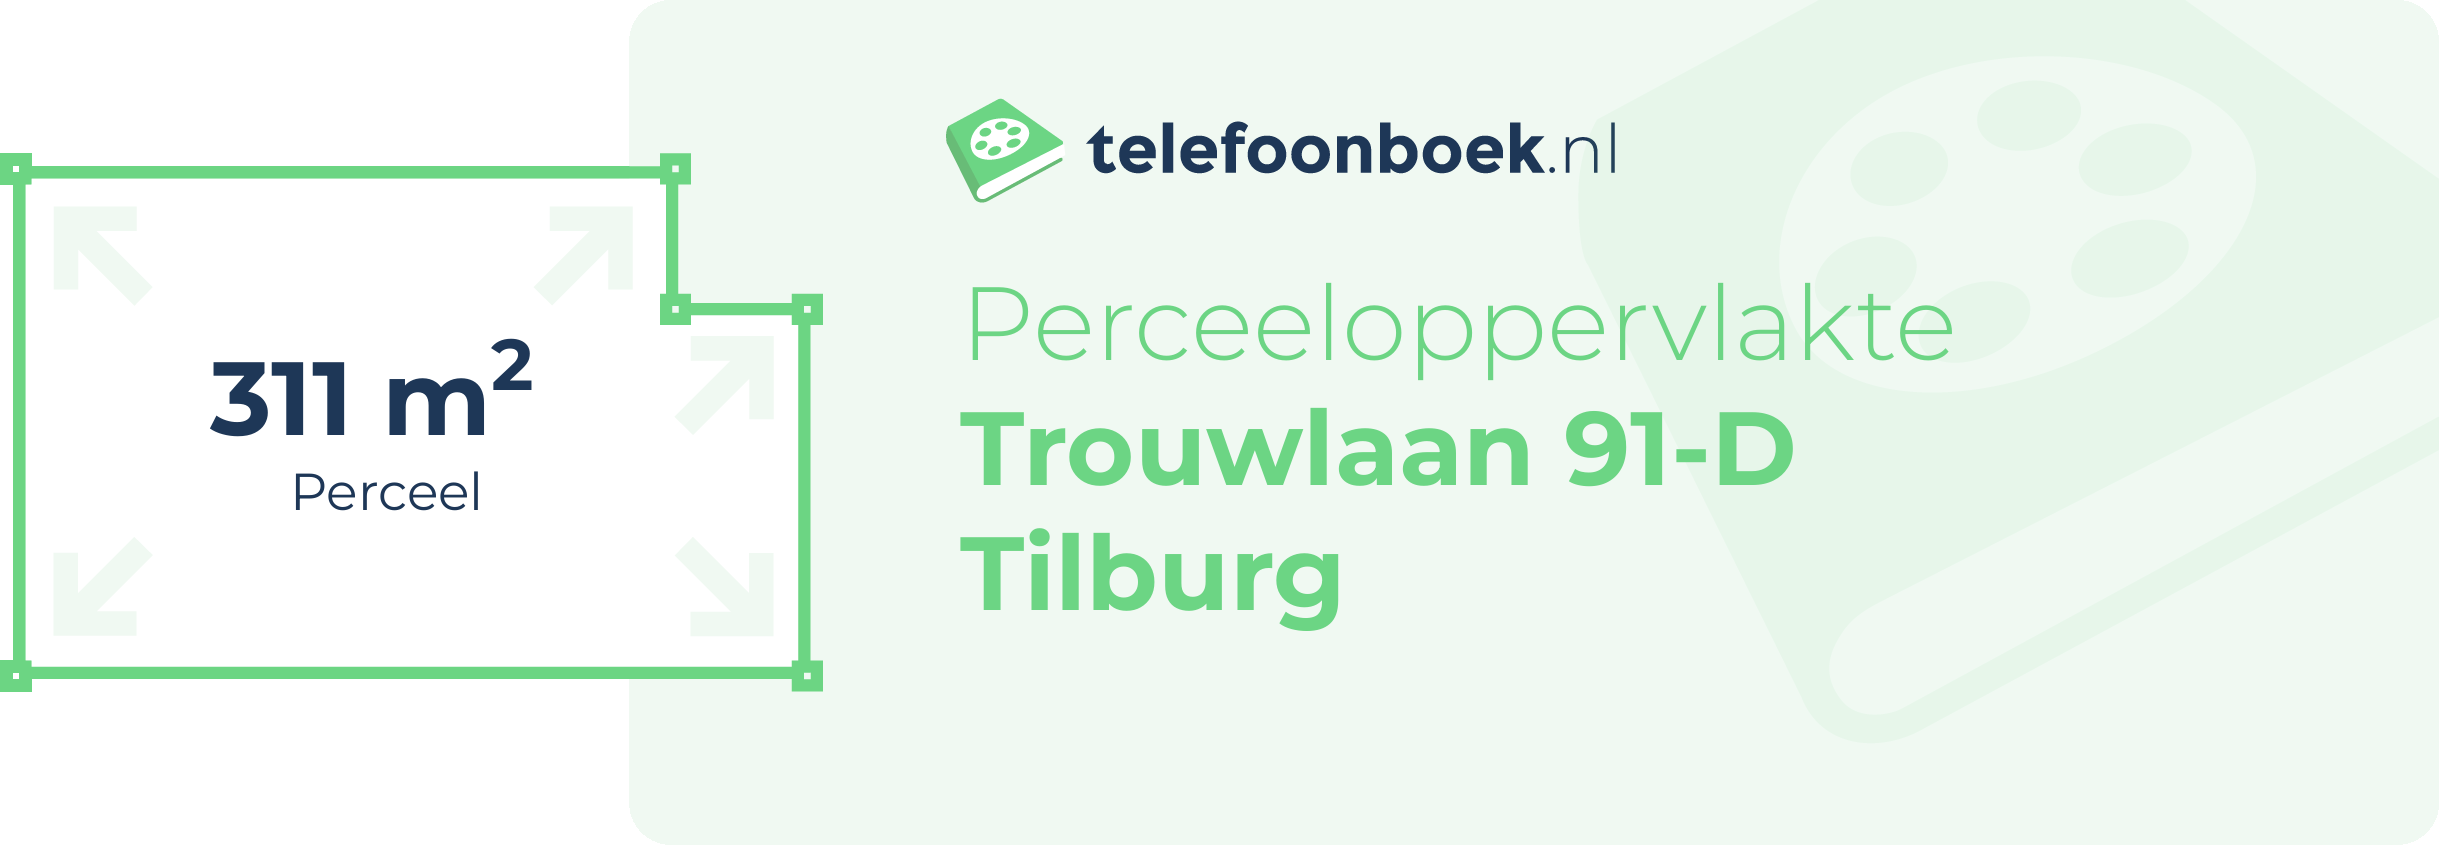 Perceeloppervlakte Trouwlaan 91-D Tilburg